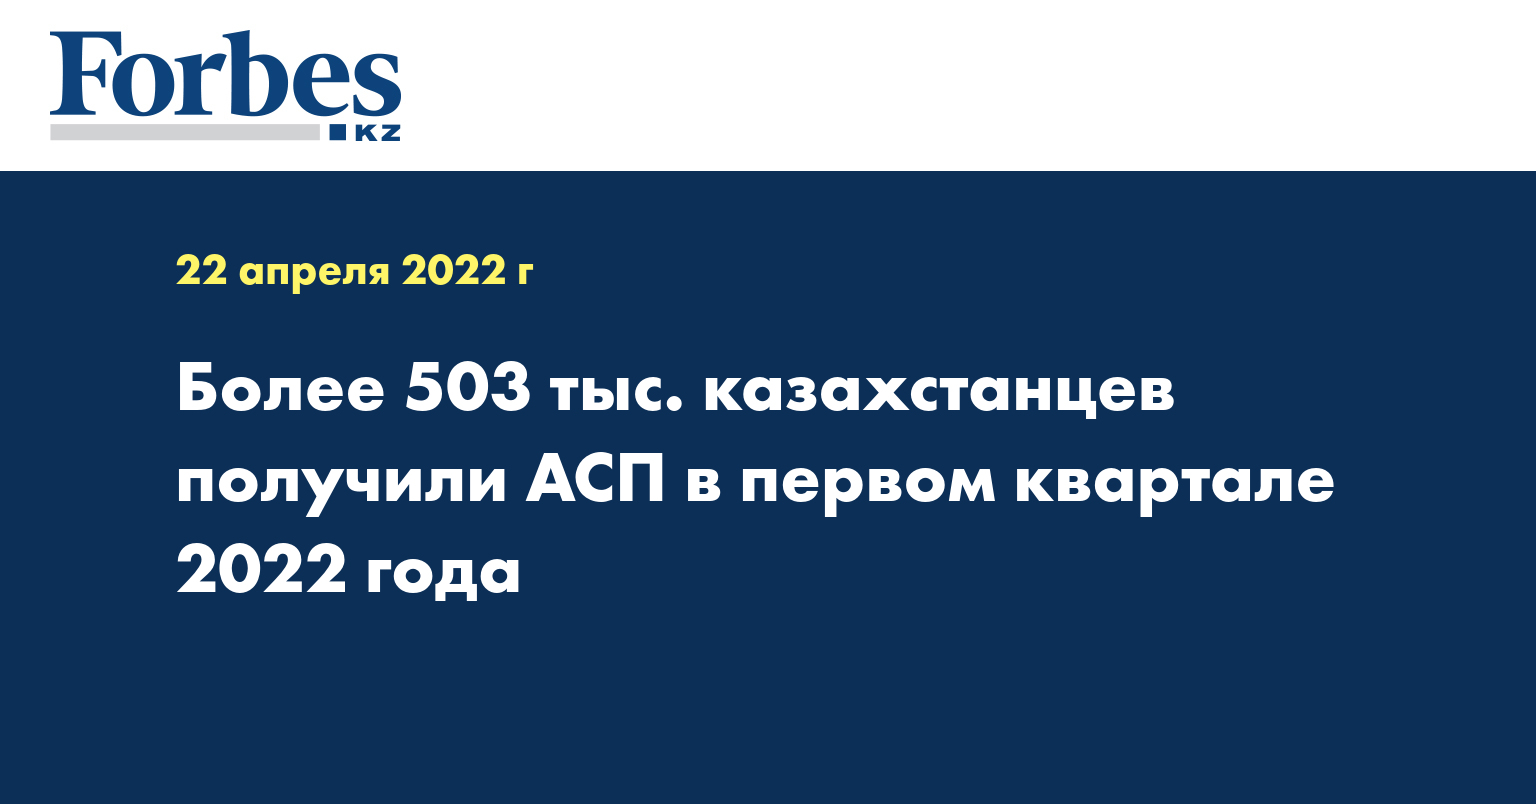  Более 503 тыс. казахстанцев получили АСП в первом квартале 2022 года